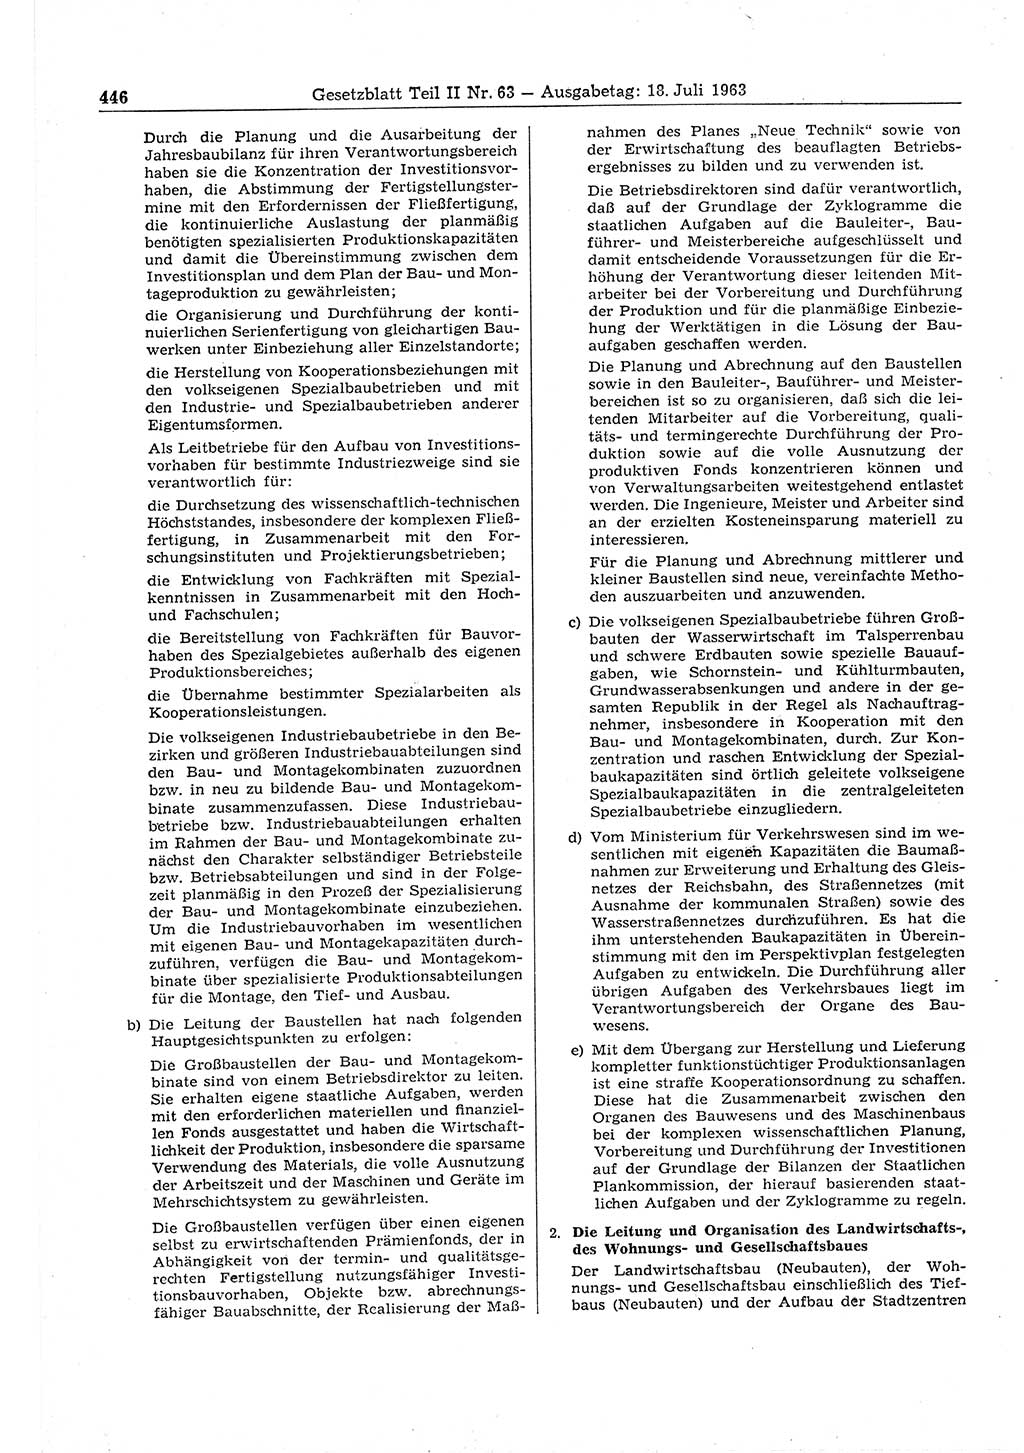 Gesetzblatt (GBl.) der Deutschen Demokratischen Republik (DDR) Teil ⅠⅠ 1963, Seite 446 (GBl. DDR ⅠⅠ 1963, S. 446)